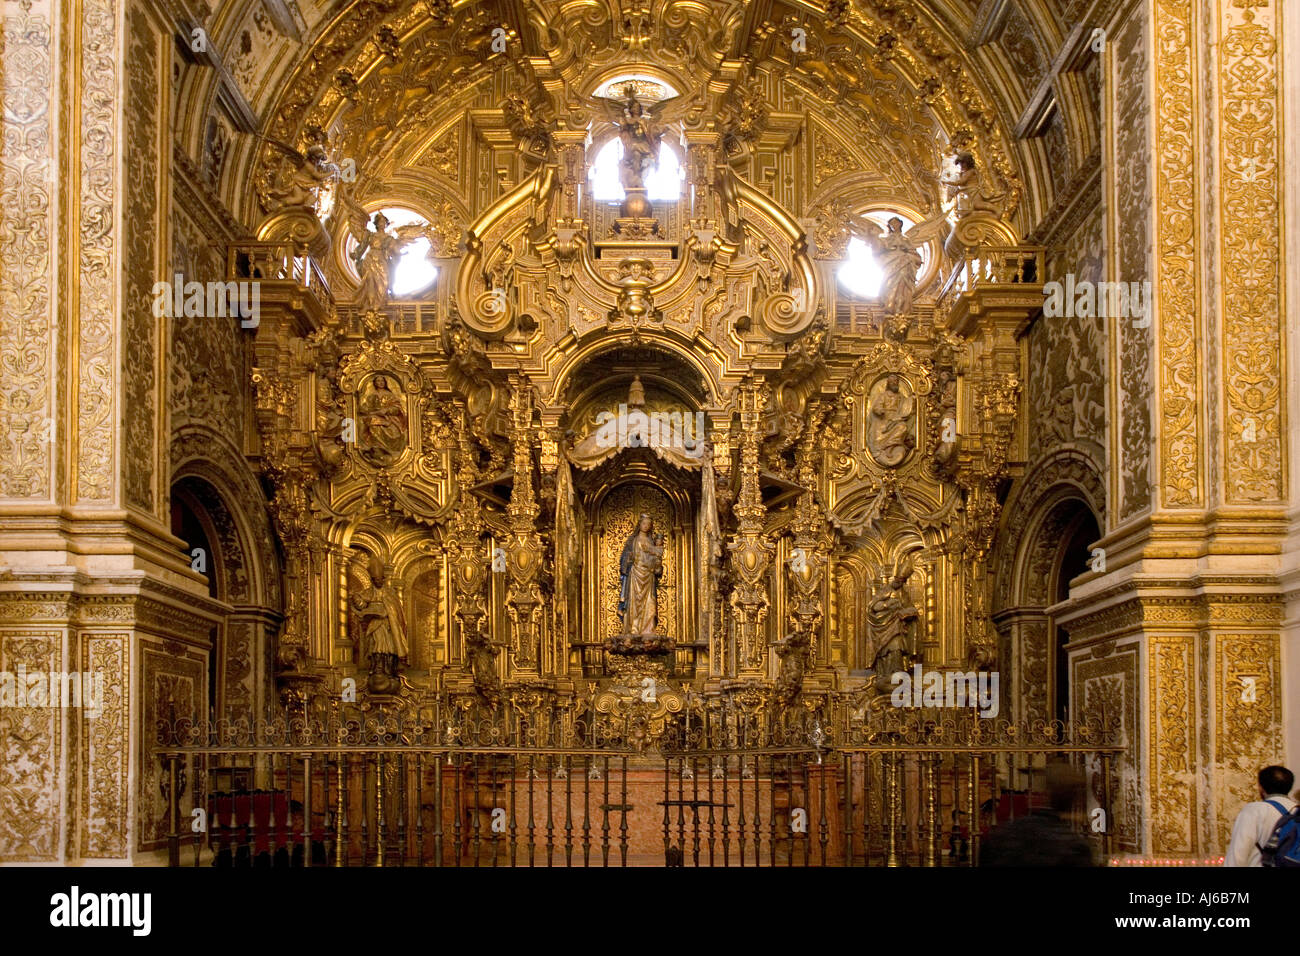 Eine aufwendige Golden verändern im Inneren der Kathedrale von Granada Kathedrale Spaniens Verkündigung Stockfoto